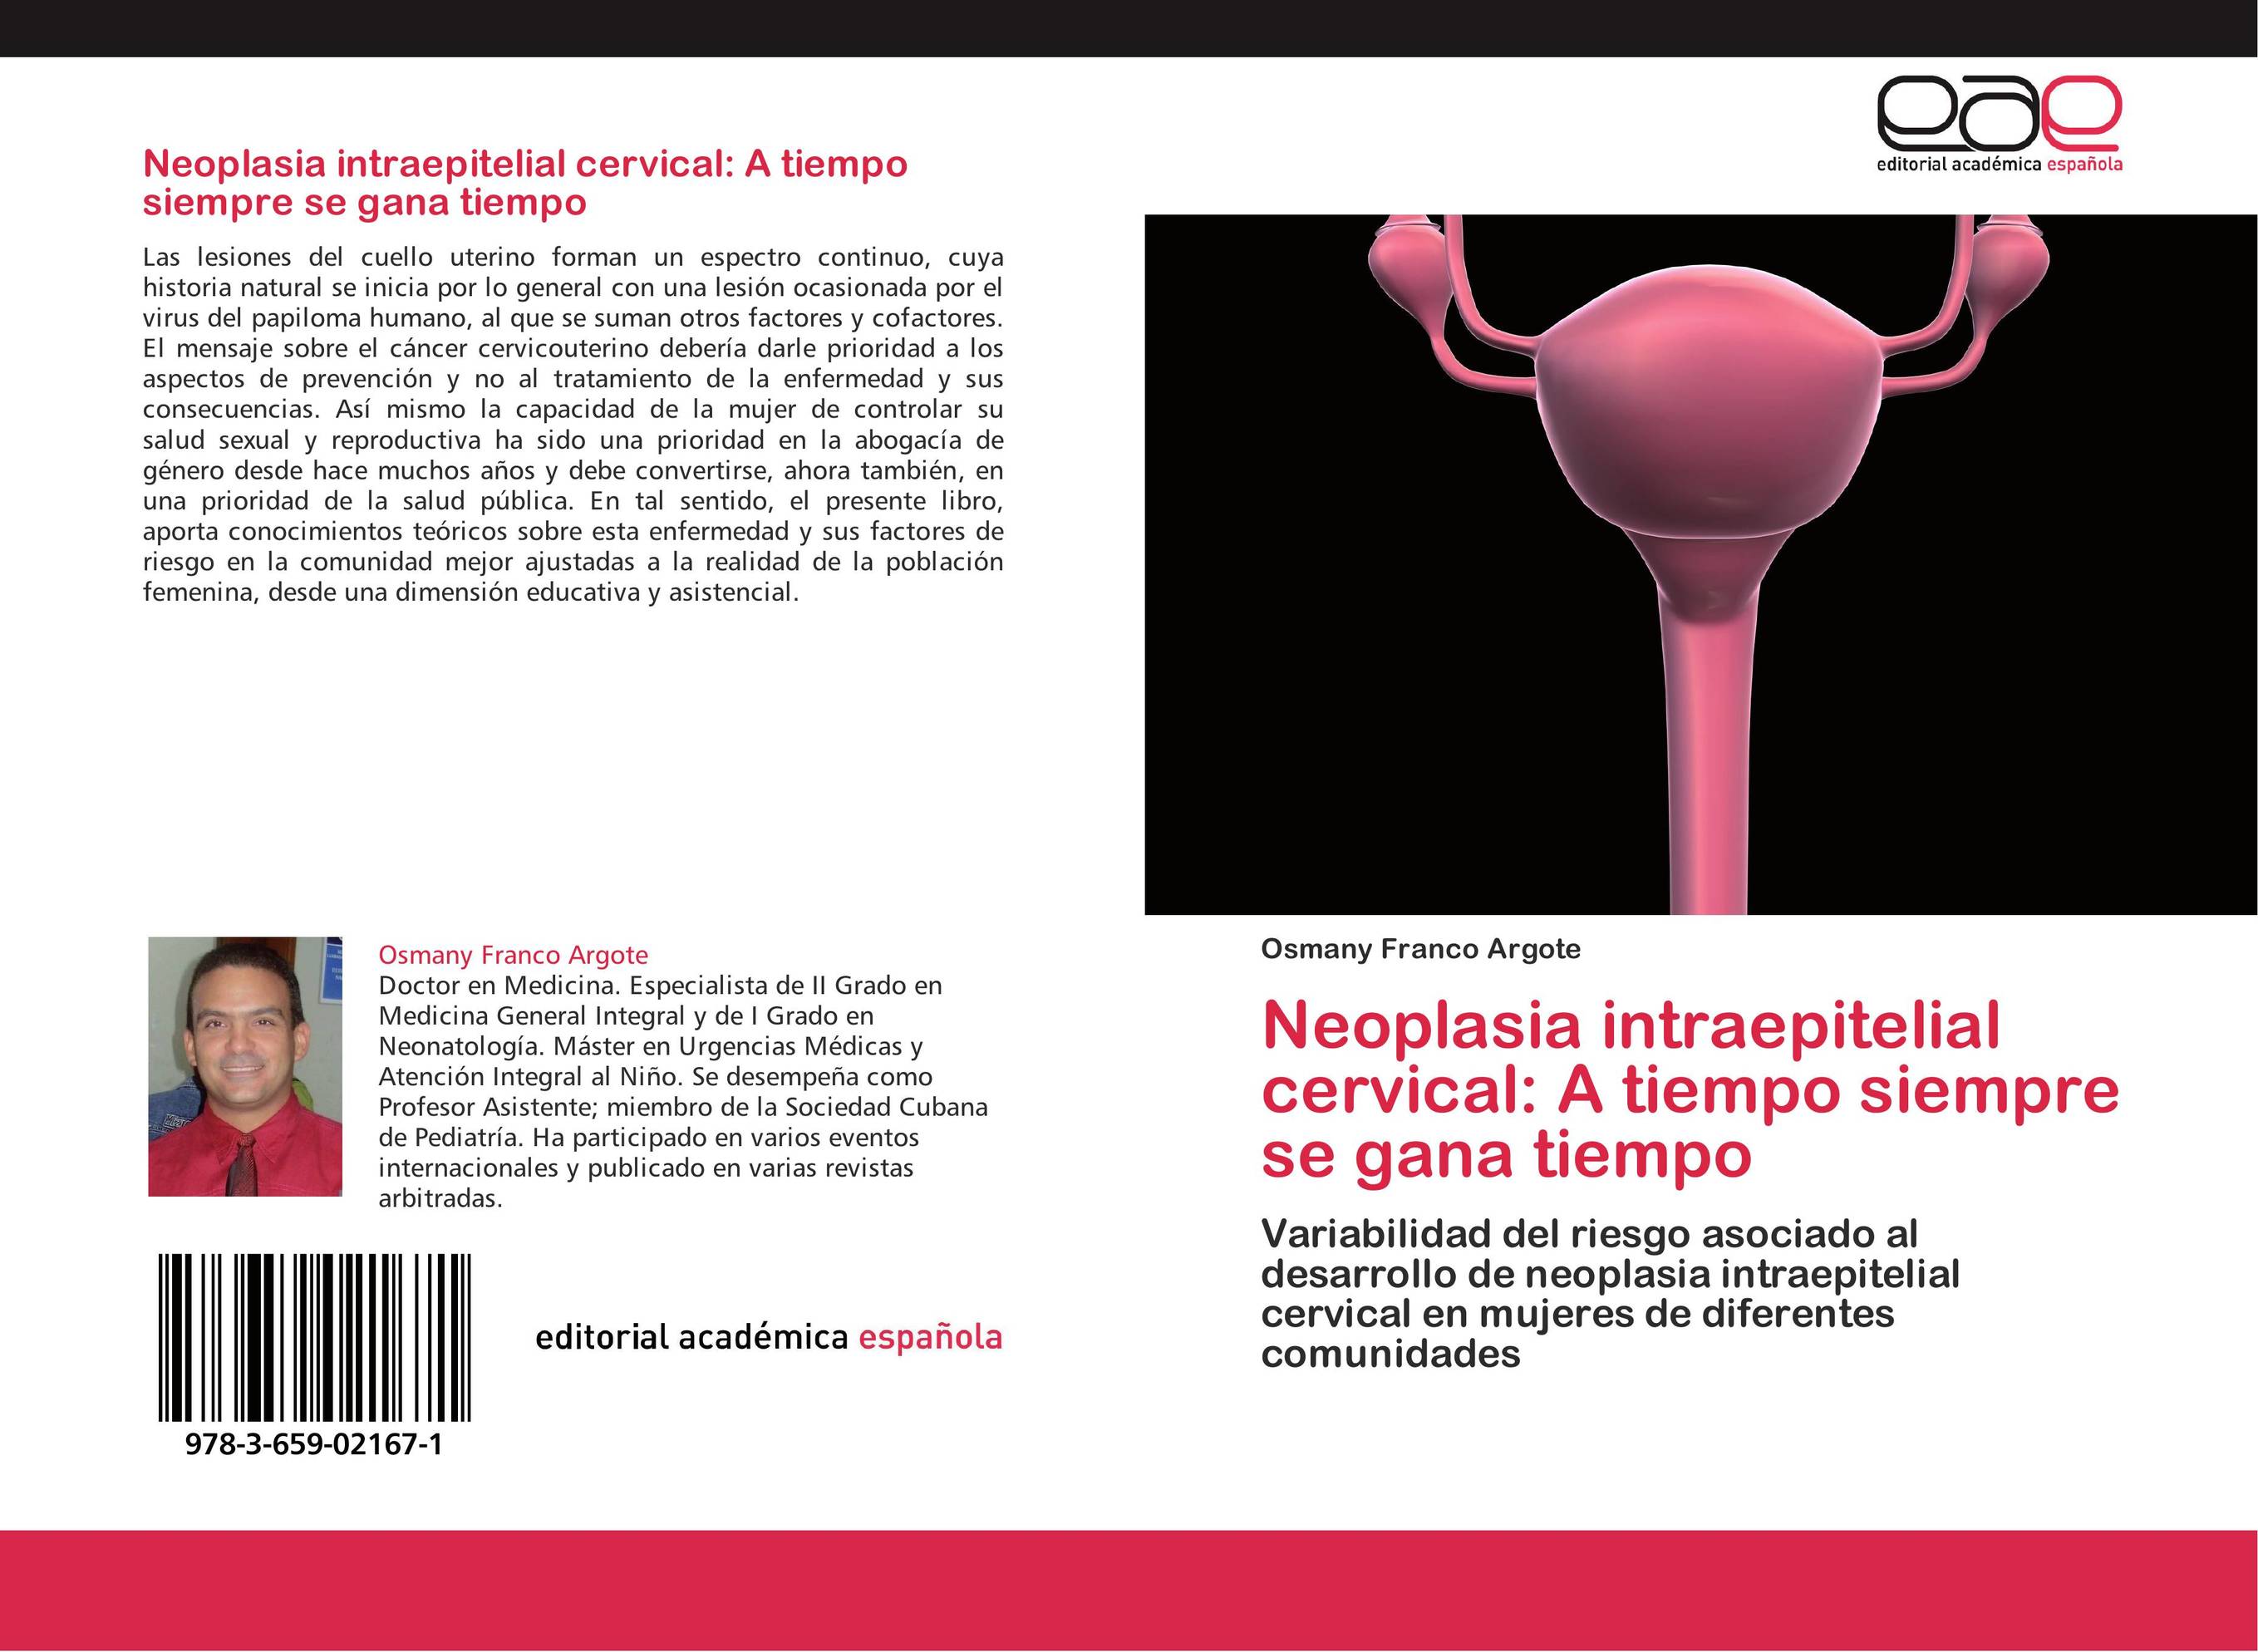 Neoplasia intraepitelial cervical: A tiempo siempre se gana tiempo